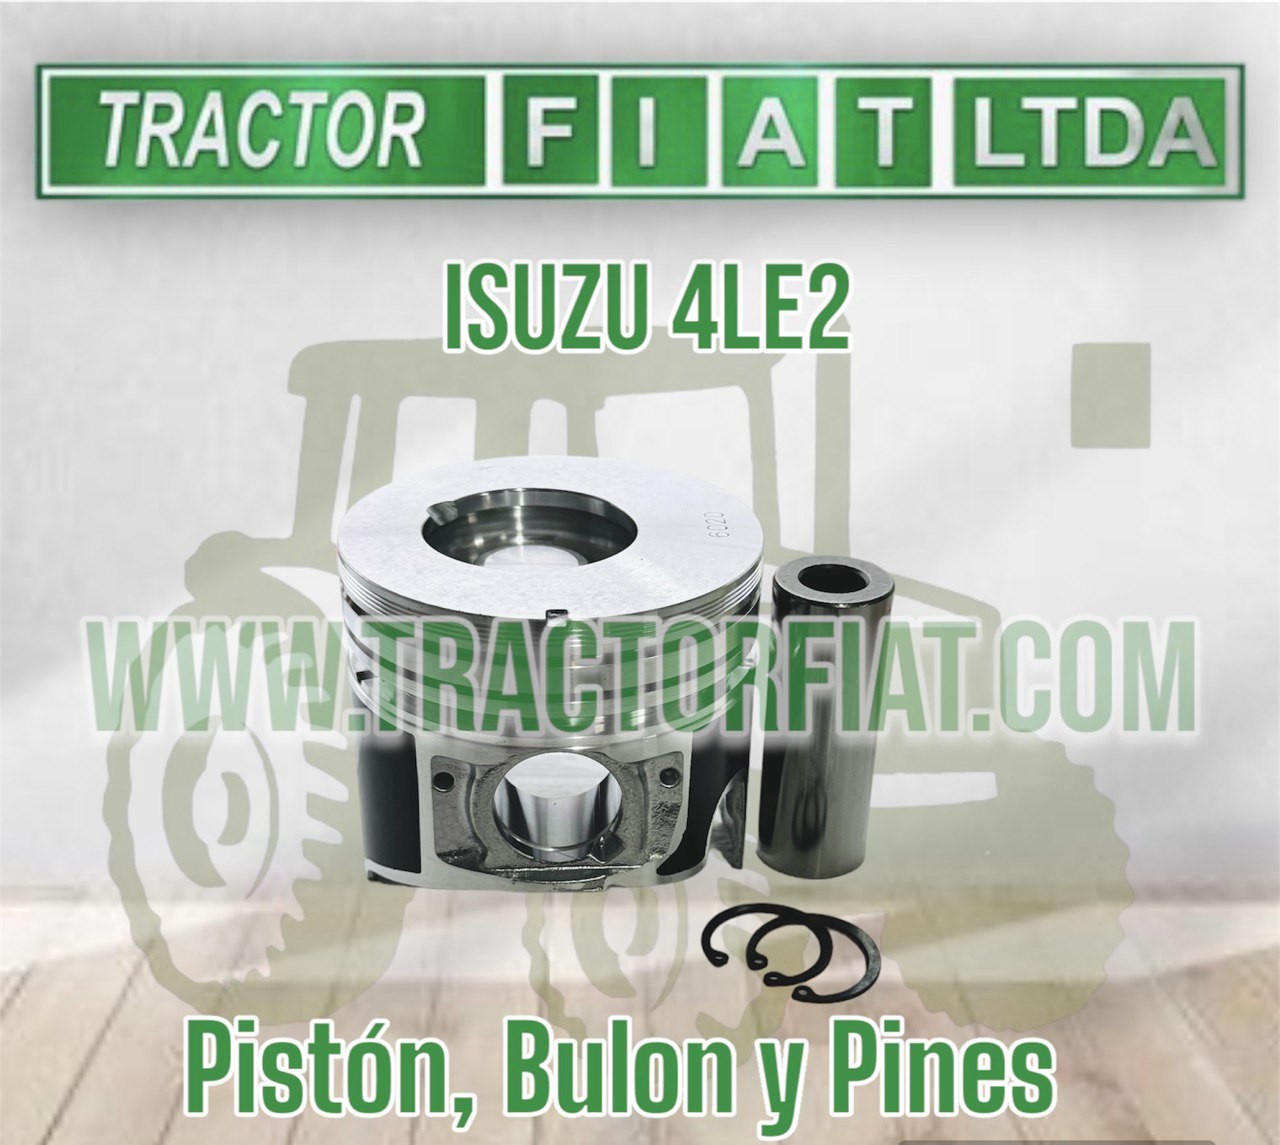 PISTON ,BULON Y PINES - MOTOR ISUZU 4LE2